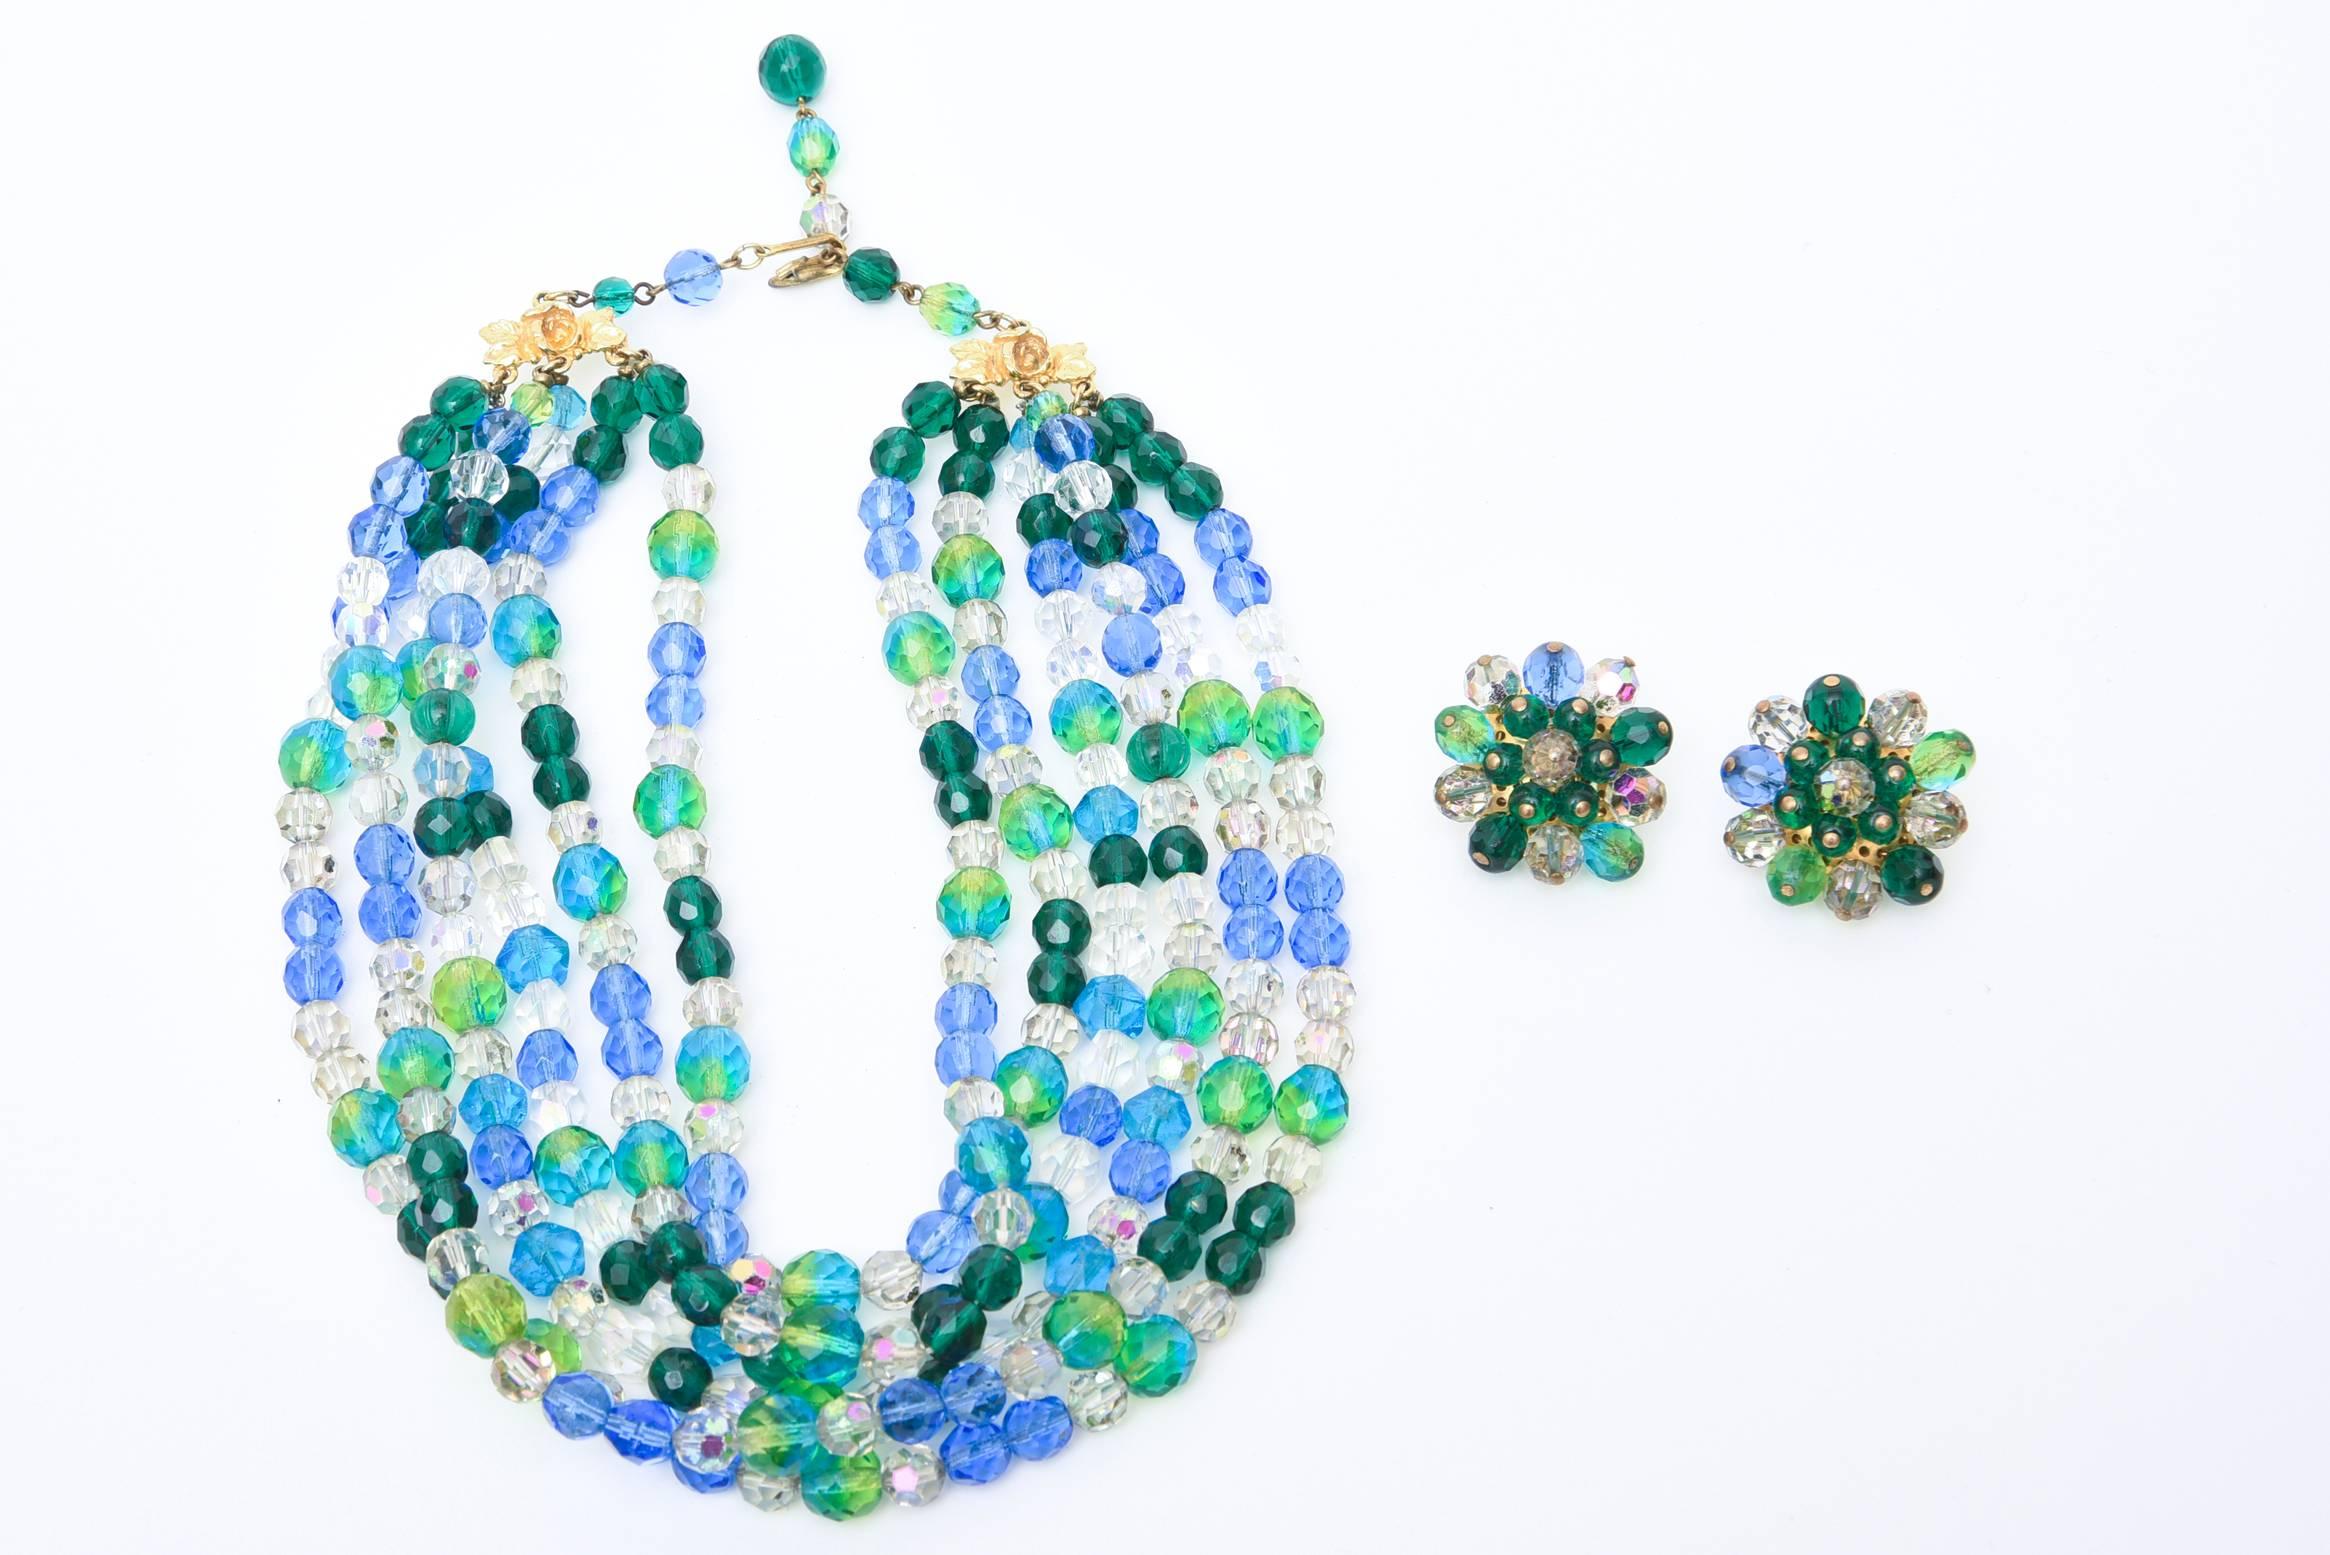 Les couleurs de la mer en alternance de perles de verre bleues et vertes composent ce collier signé vintage superbe Elsa Schiaparelli si facile à porter. Il y a 6 larges brins de chaque côté de perles de verre colorées et des boucles d'oreilles à